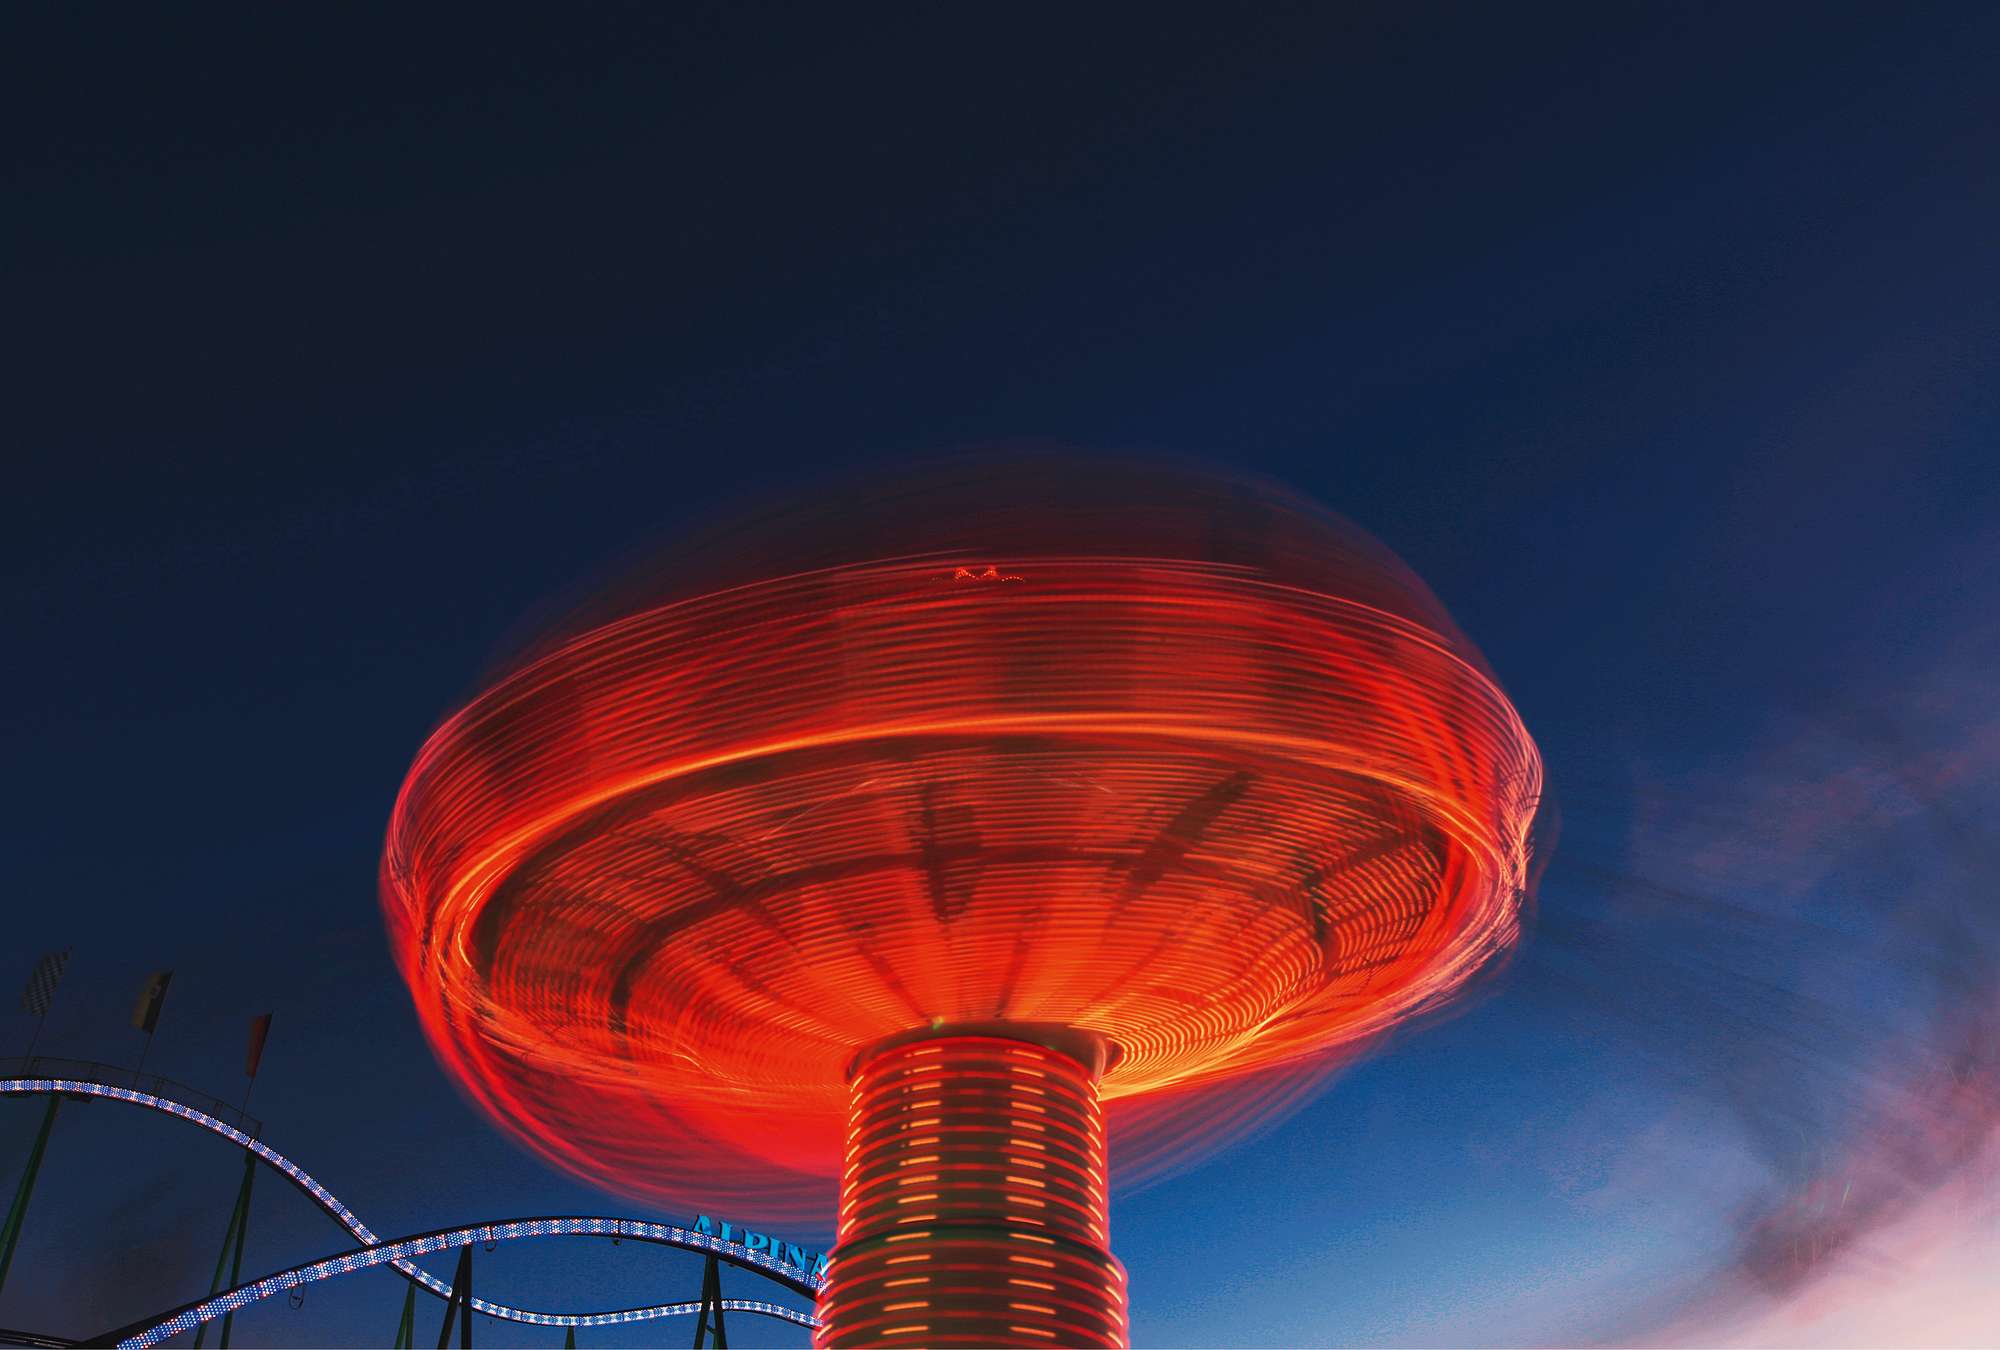             Carrousel rood - fotobehang carnaval bij nacht
        